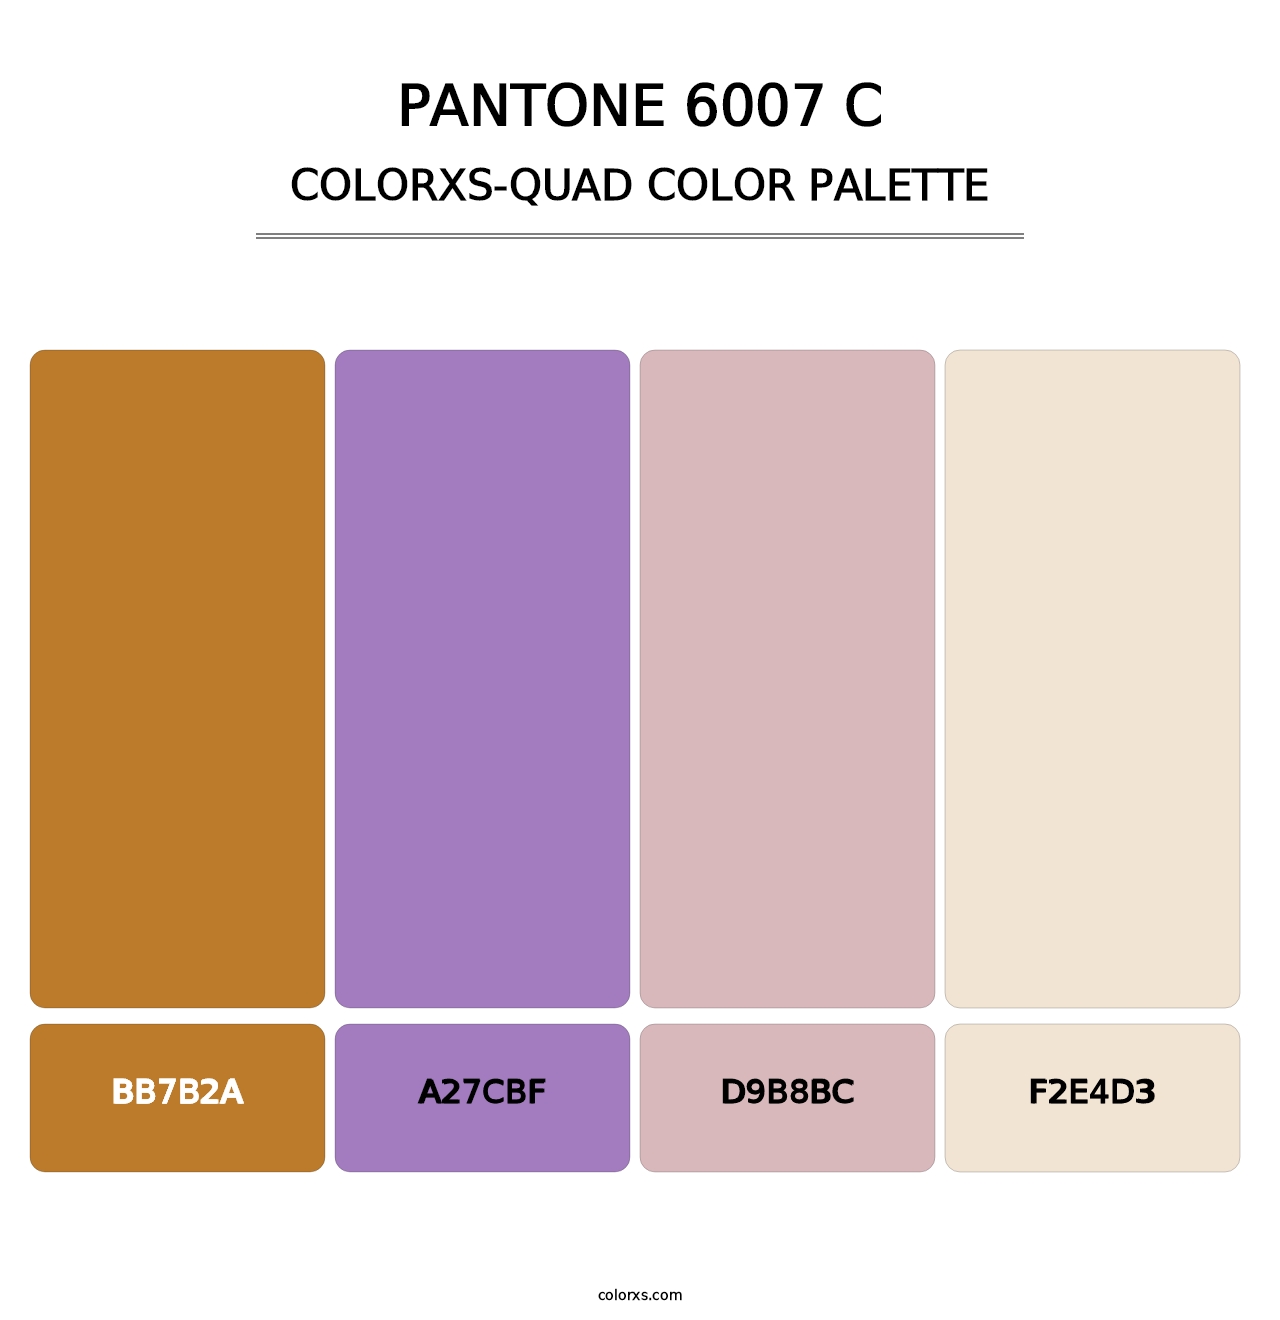 PANTONE 6007 C - Colorxs Quad Palette